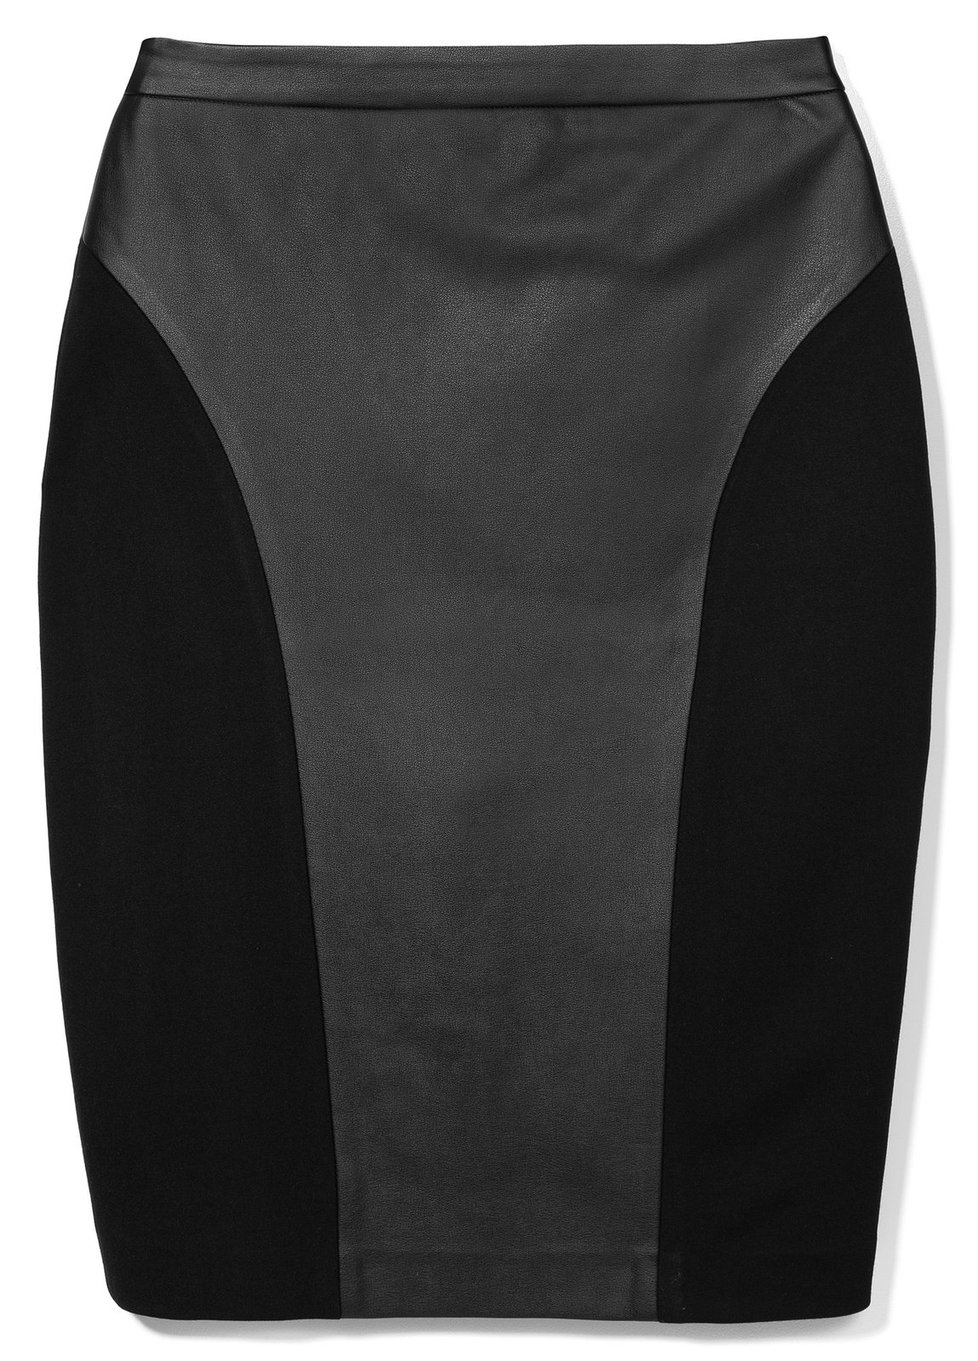 Černá sukně s kůží, Mohito, info o ceně v obchodě.